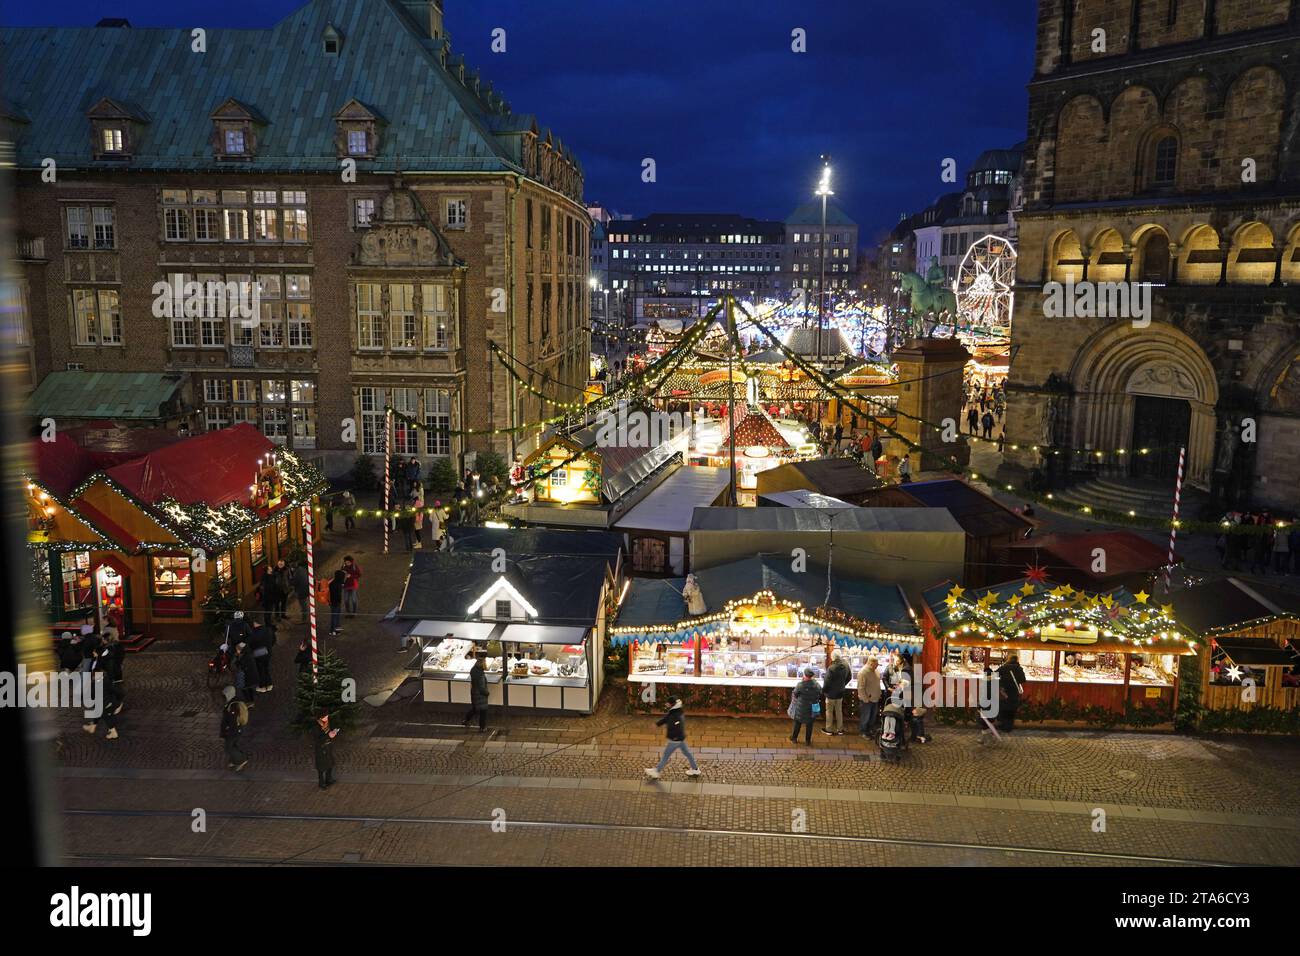 Der Bremer Weihnachtsmarkt steht nicht nur auf dem Bremer Marktplatz, sondern auch auf dem benachbarten Domshof Foto. Links das sogenannte neue Rathaus, rechts der Dom. *** Bremens Weihnachtsmarkt befindet sich nicht nur am Bremens Markt, sondern auch im benachbarten Domshof Hof Foto links Stockfoto